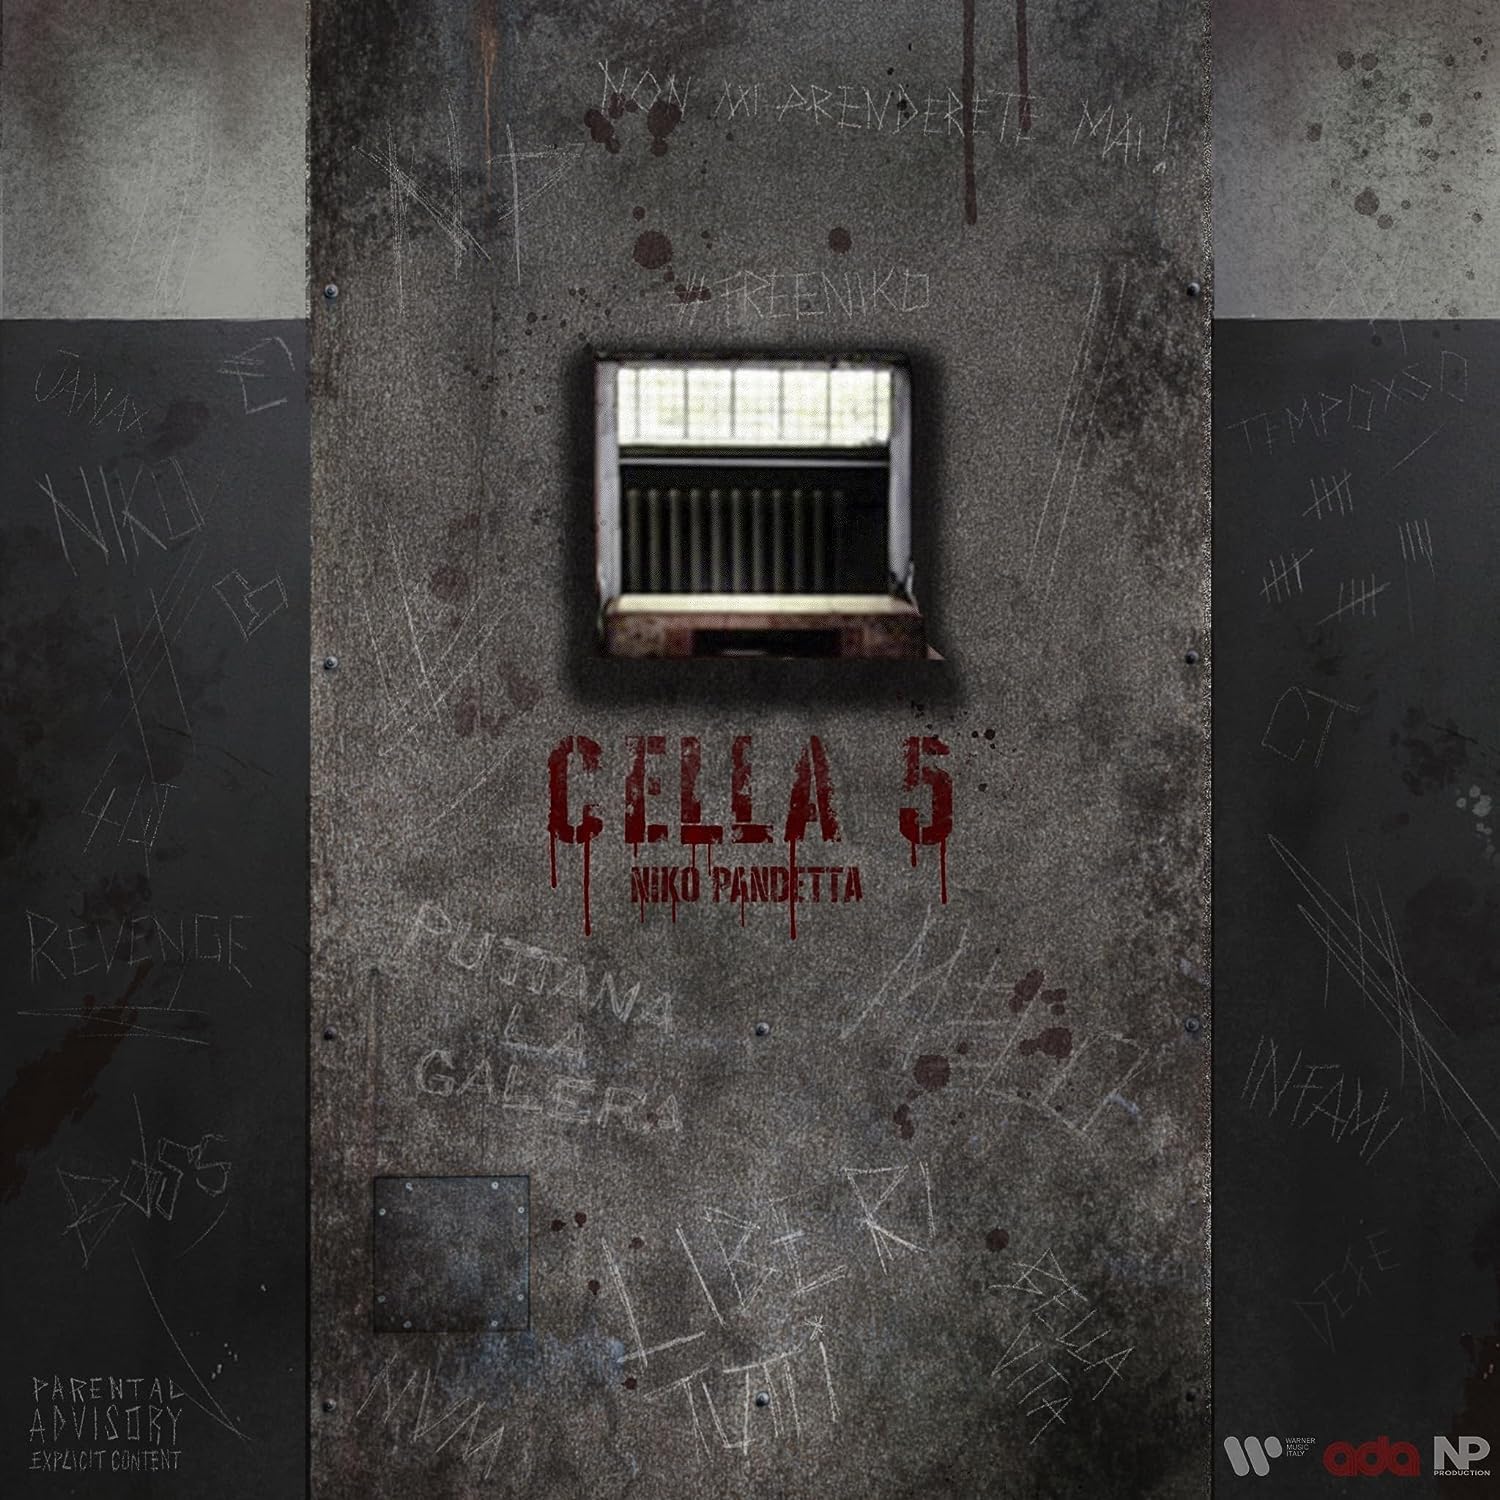 Cella 5 (CD)